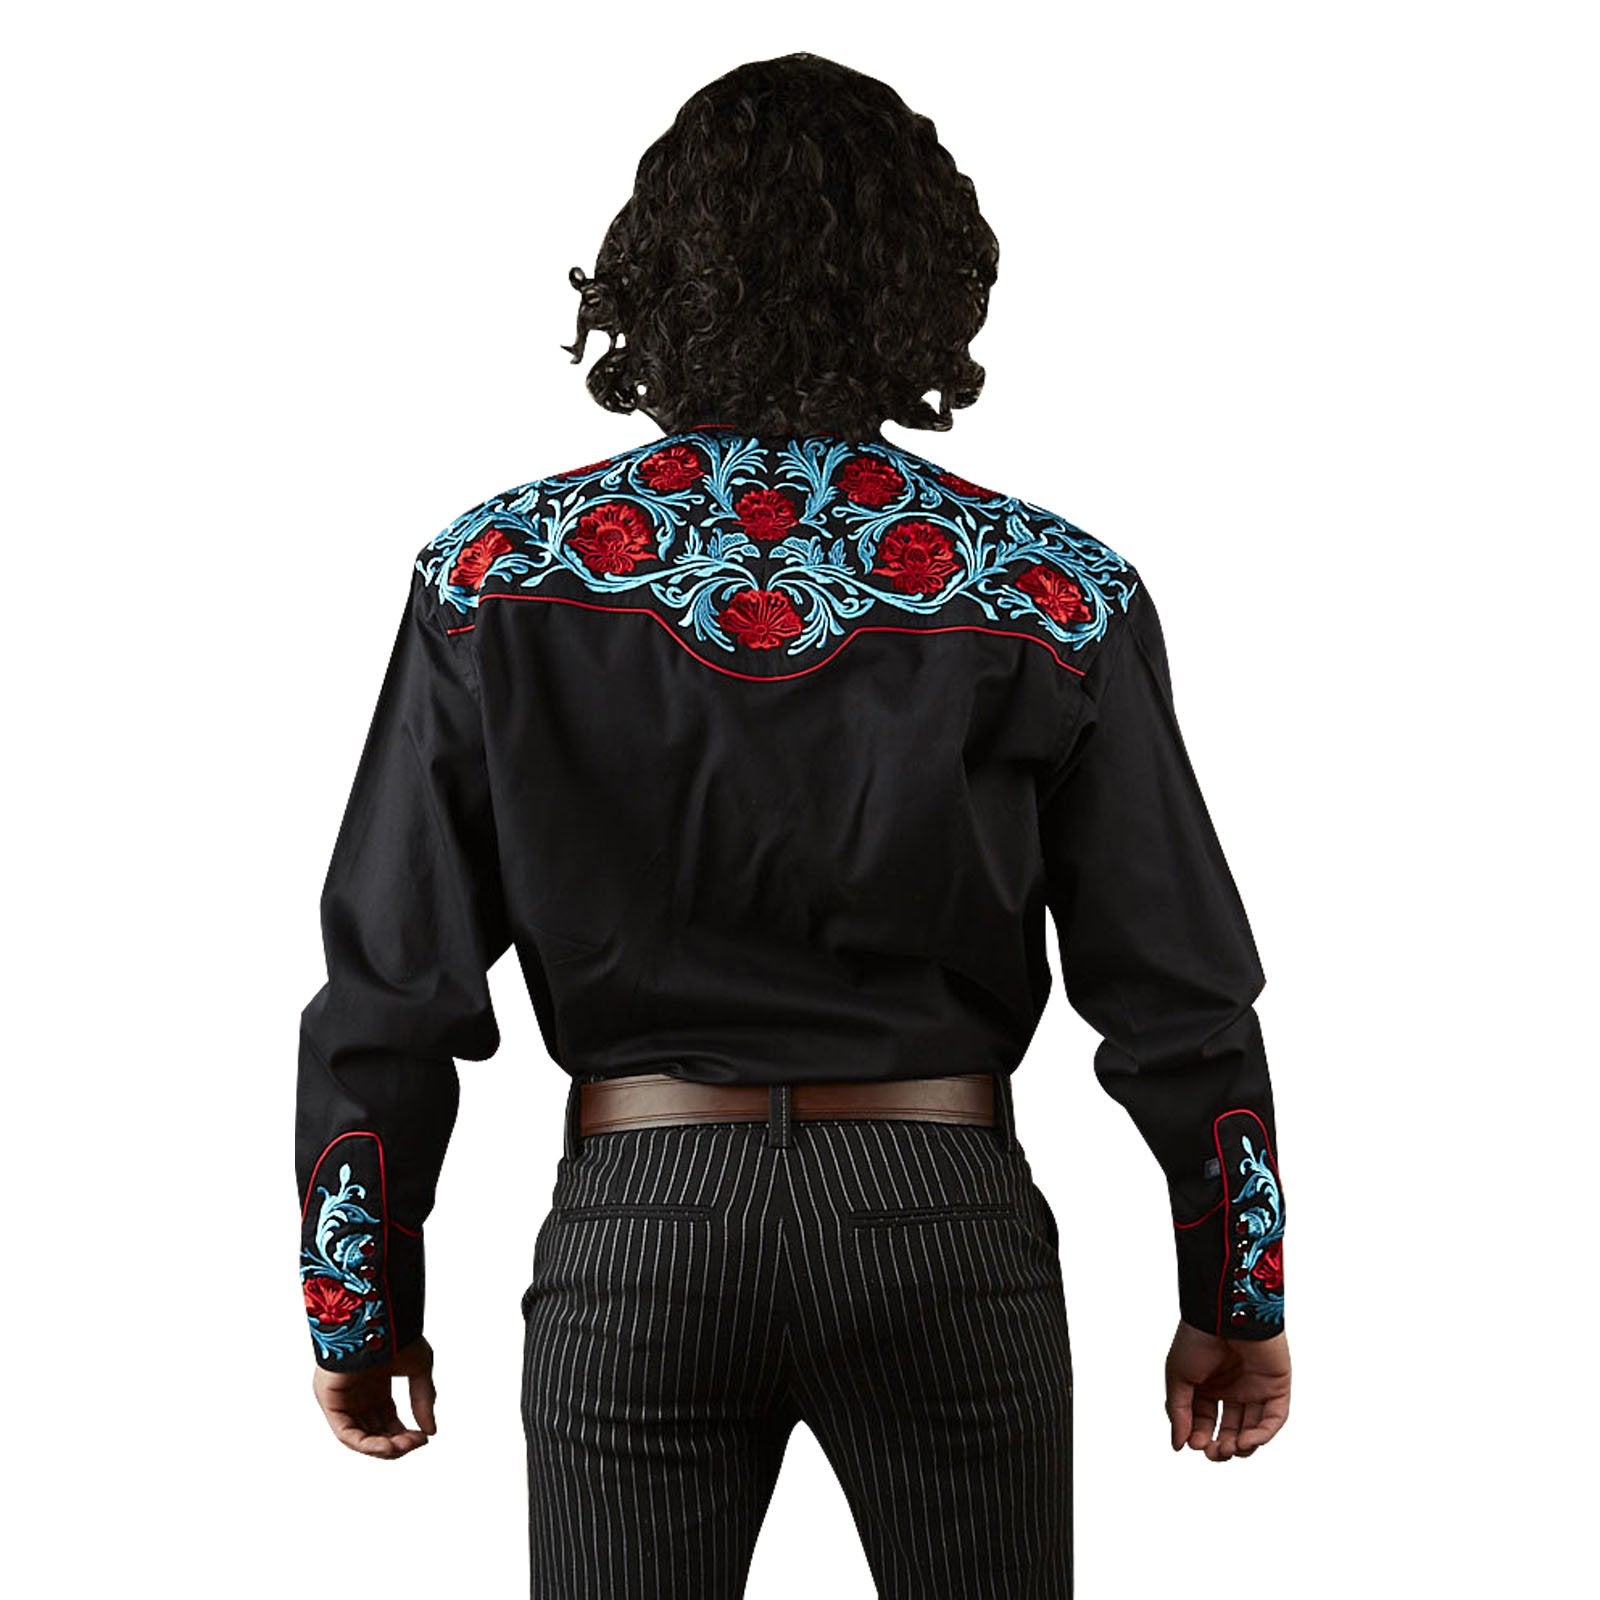 Rockmount Ranch Wear Men's Vintage Western Shirt Red Floral on Black Back